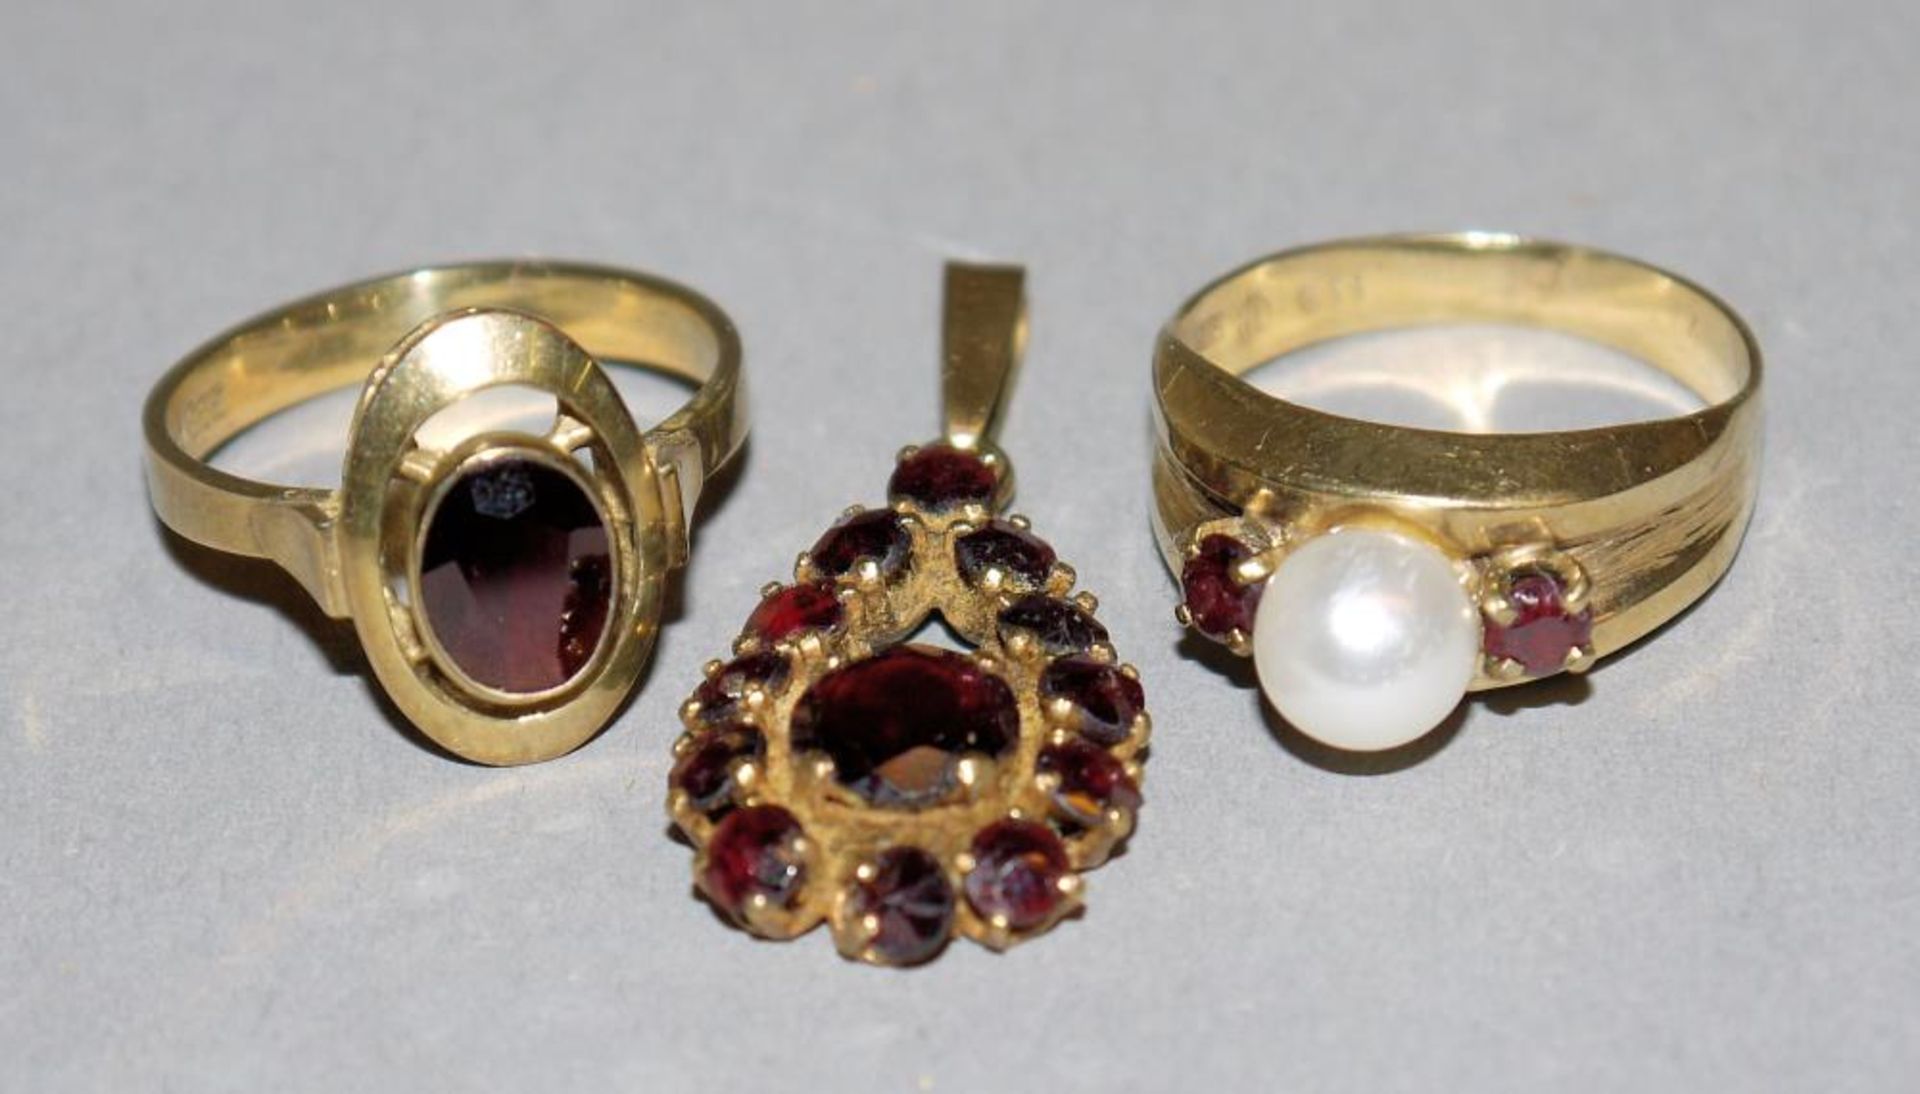 Zwei Ringe mit Granat und Perle sowie Granat-Angänger, Gold 8kt Gold, einmal besetzt mit ovalem